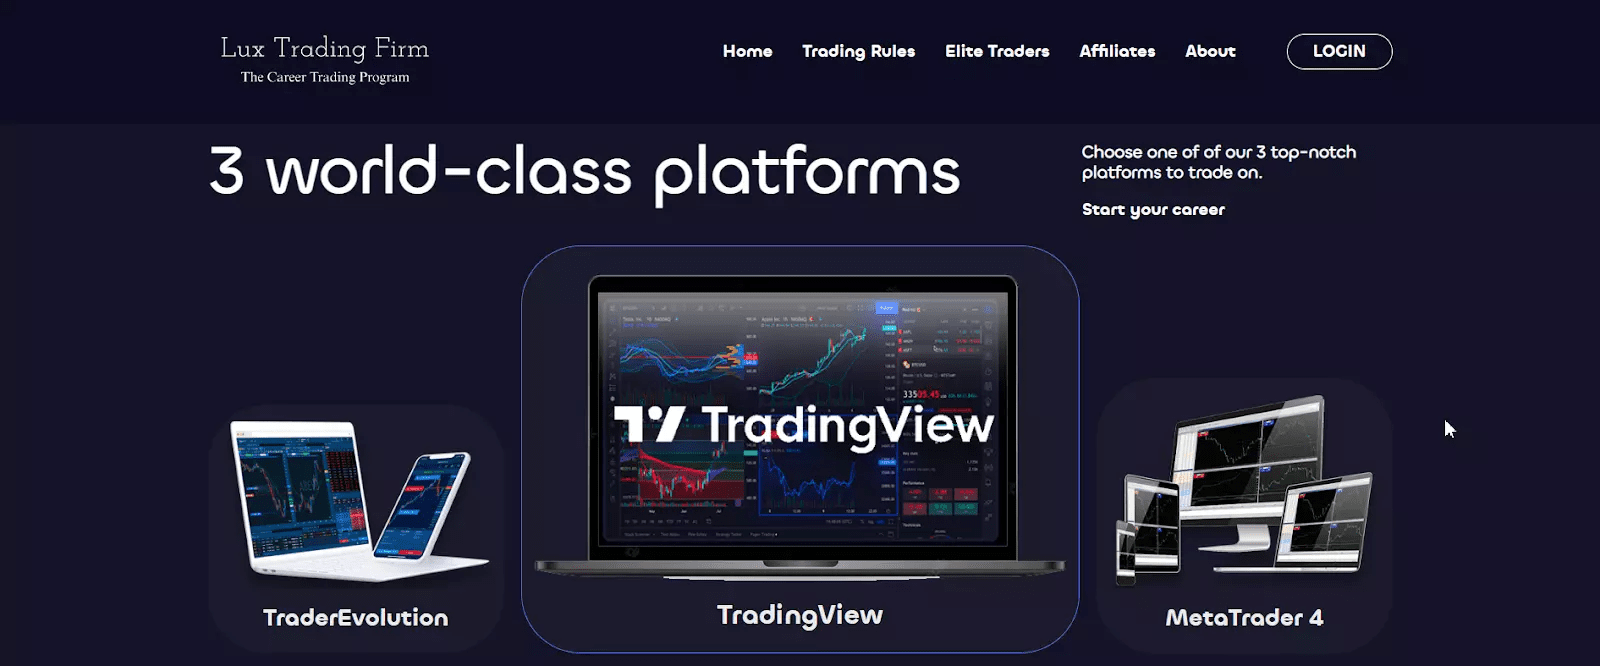 รีวิวLux Trading Firm - เลือกแพลตฟอร์มการซื้อขาย